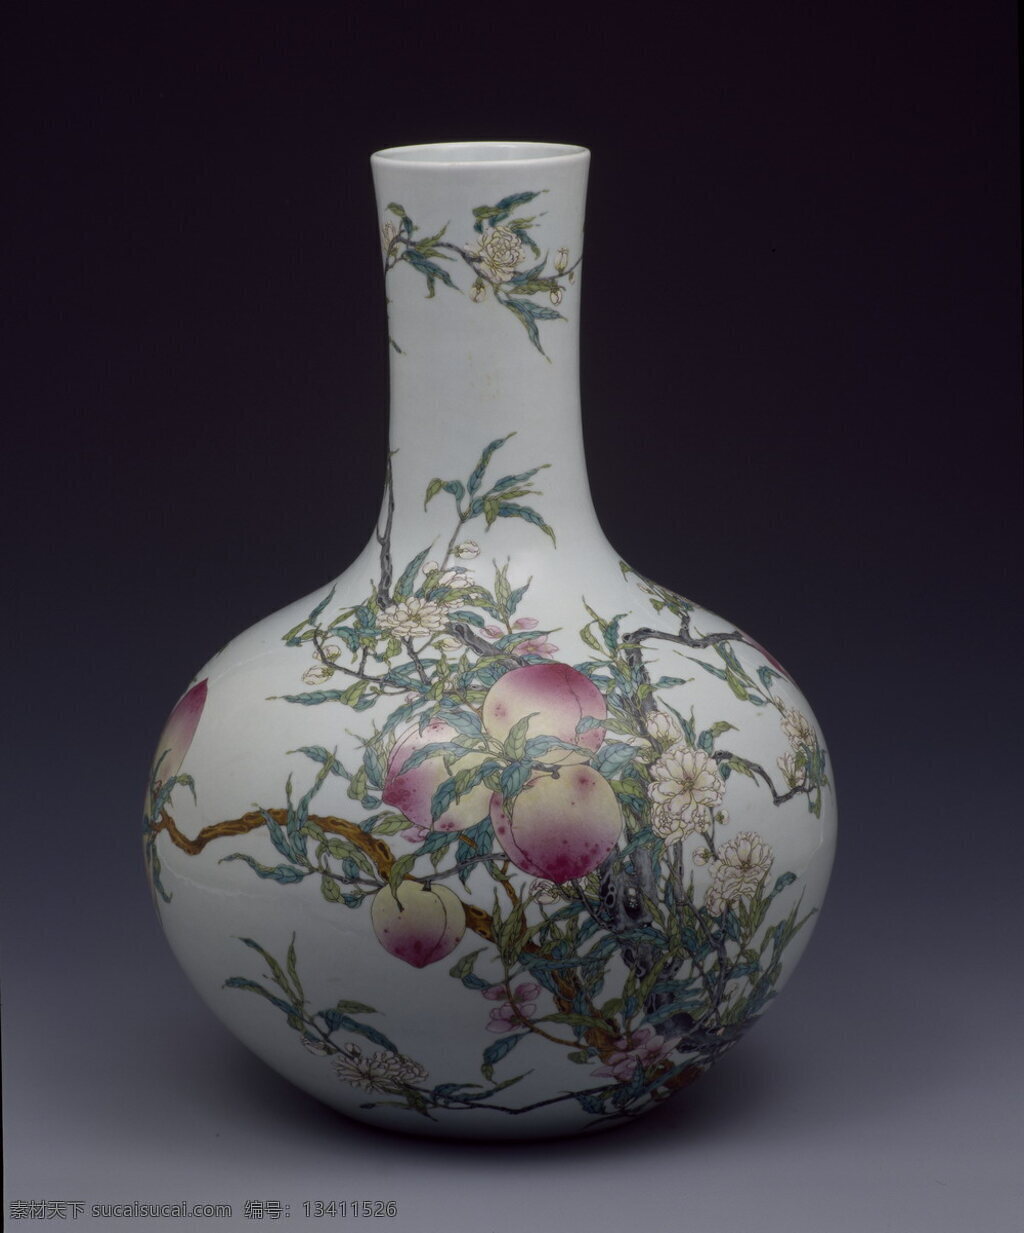 粉彩 桃 纹 天球瓶 清 乾隆 瓷器 彩釉 文物 清朝 文化艺术 传统文化